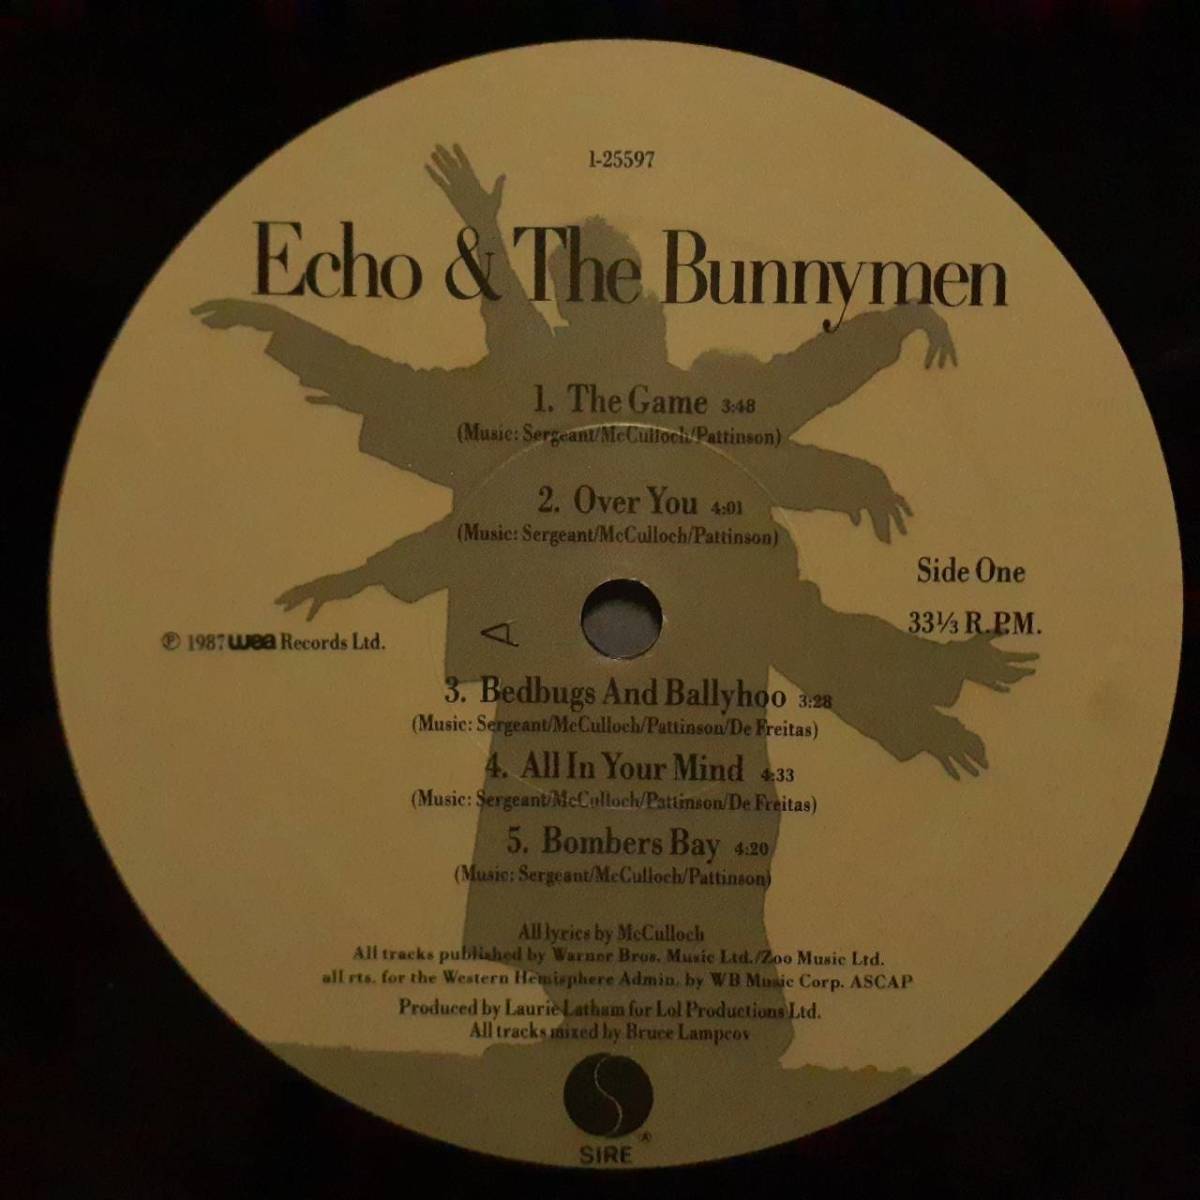 米SIRE盤LP！花刻印あり！Echo & The Bunnymen / Echo & The Bunnymen (5th Album) 1987年 1-25597 エコー＆ザ・バニーメン Ian McCulloch_画像2